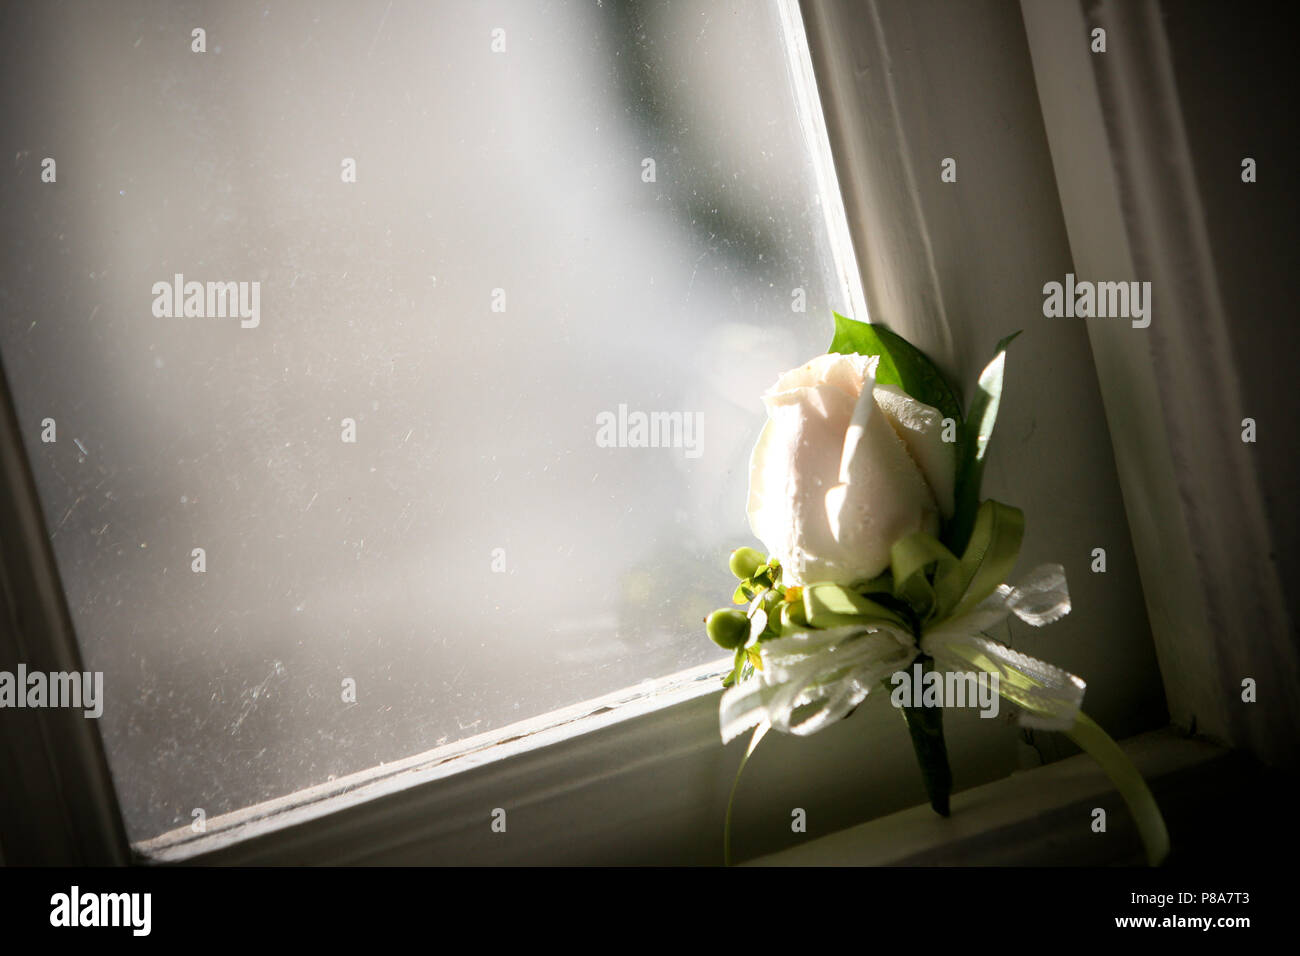 Eine schöne boutonnière, einem frischen weißen bud Rose, ist poetisch lehnte sich gegen eine alte Scheibe mit Spinnweben auf einem Holzrahmen. Stockfoto